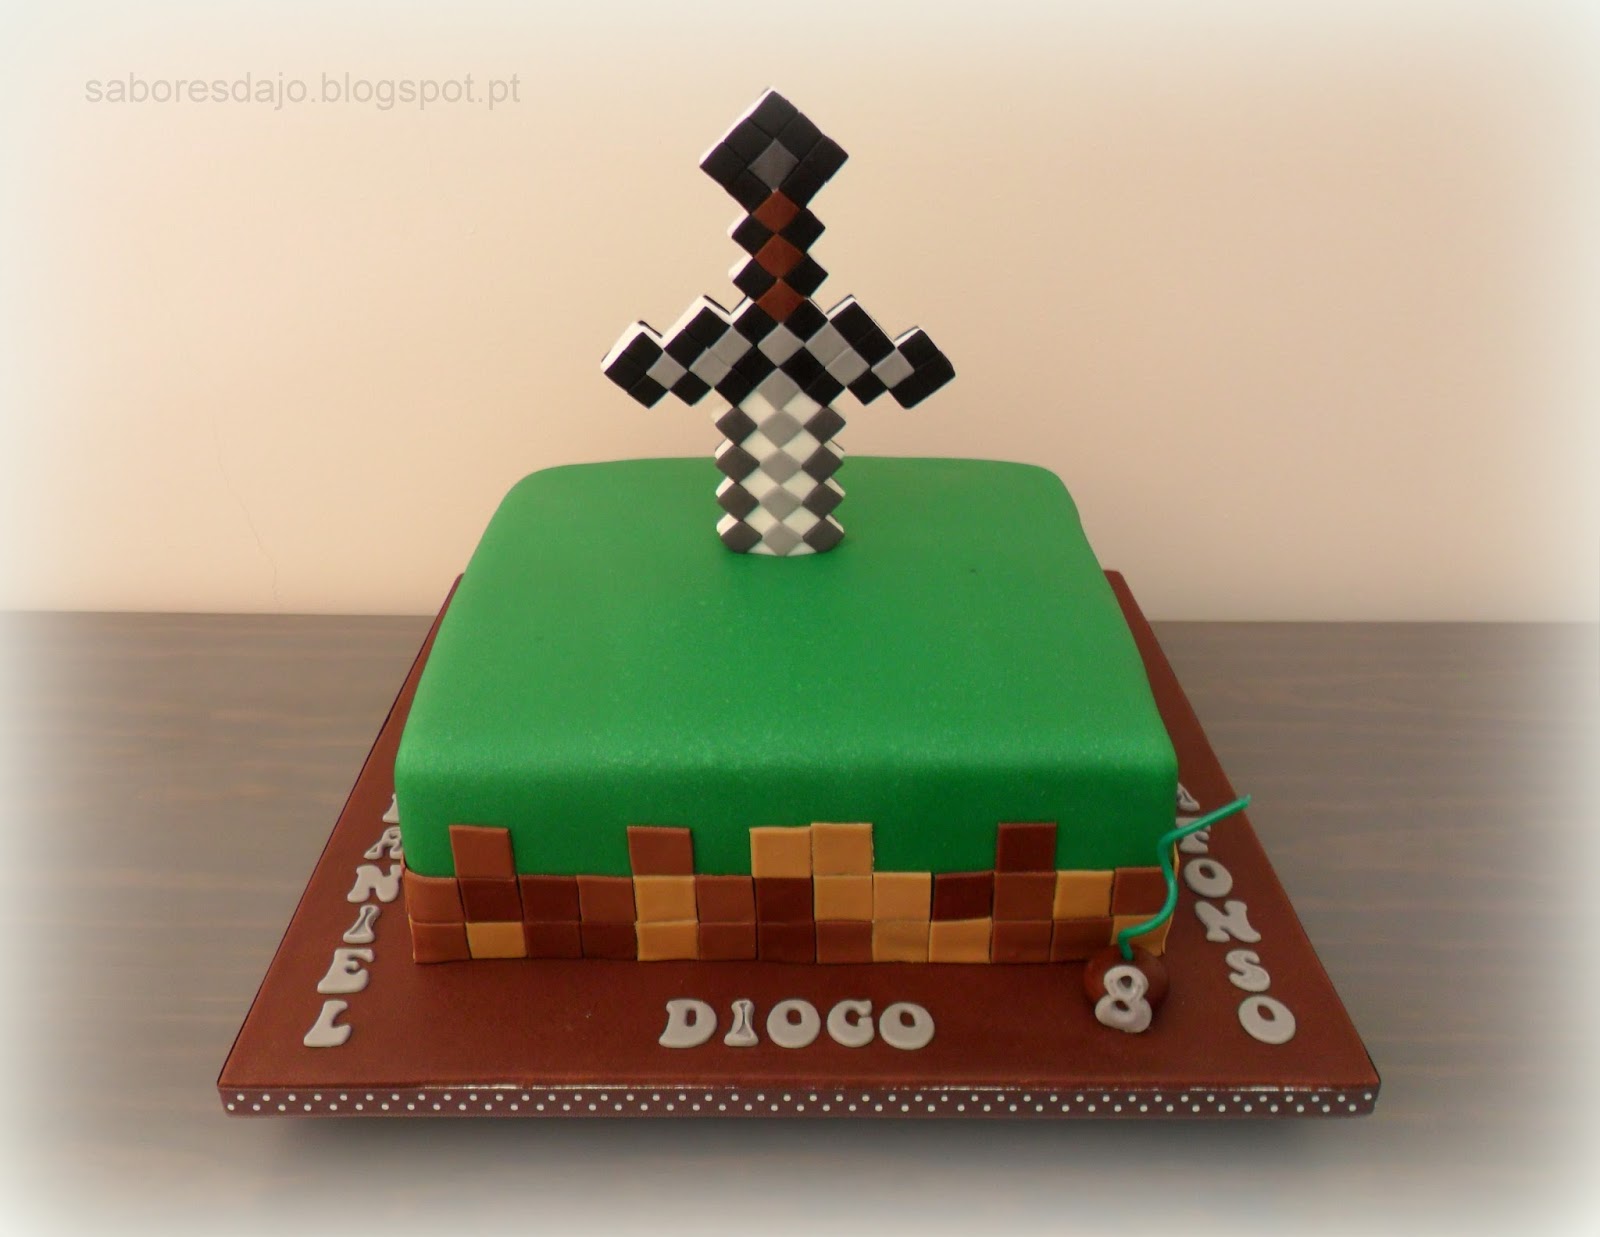 Sabores da Jo: O bolo e as lembranças de aniversário do Diogo, do Afonso e  do Daniel, três grandes amigo e fãs do jogo Minecraft